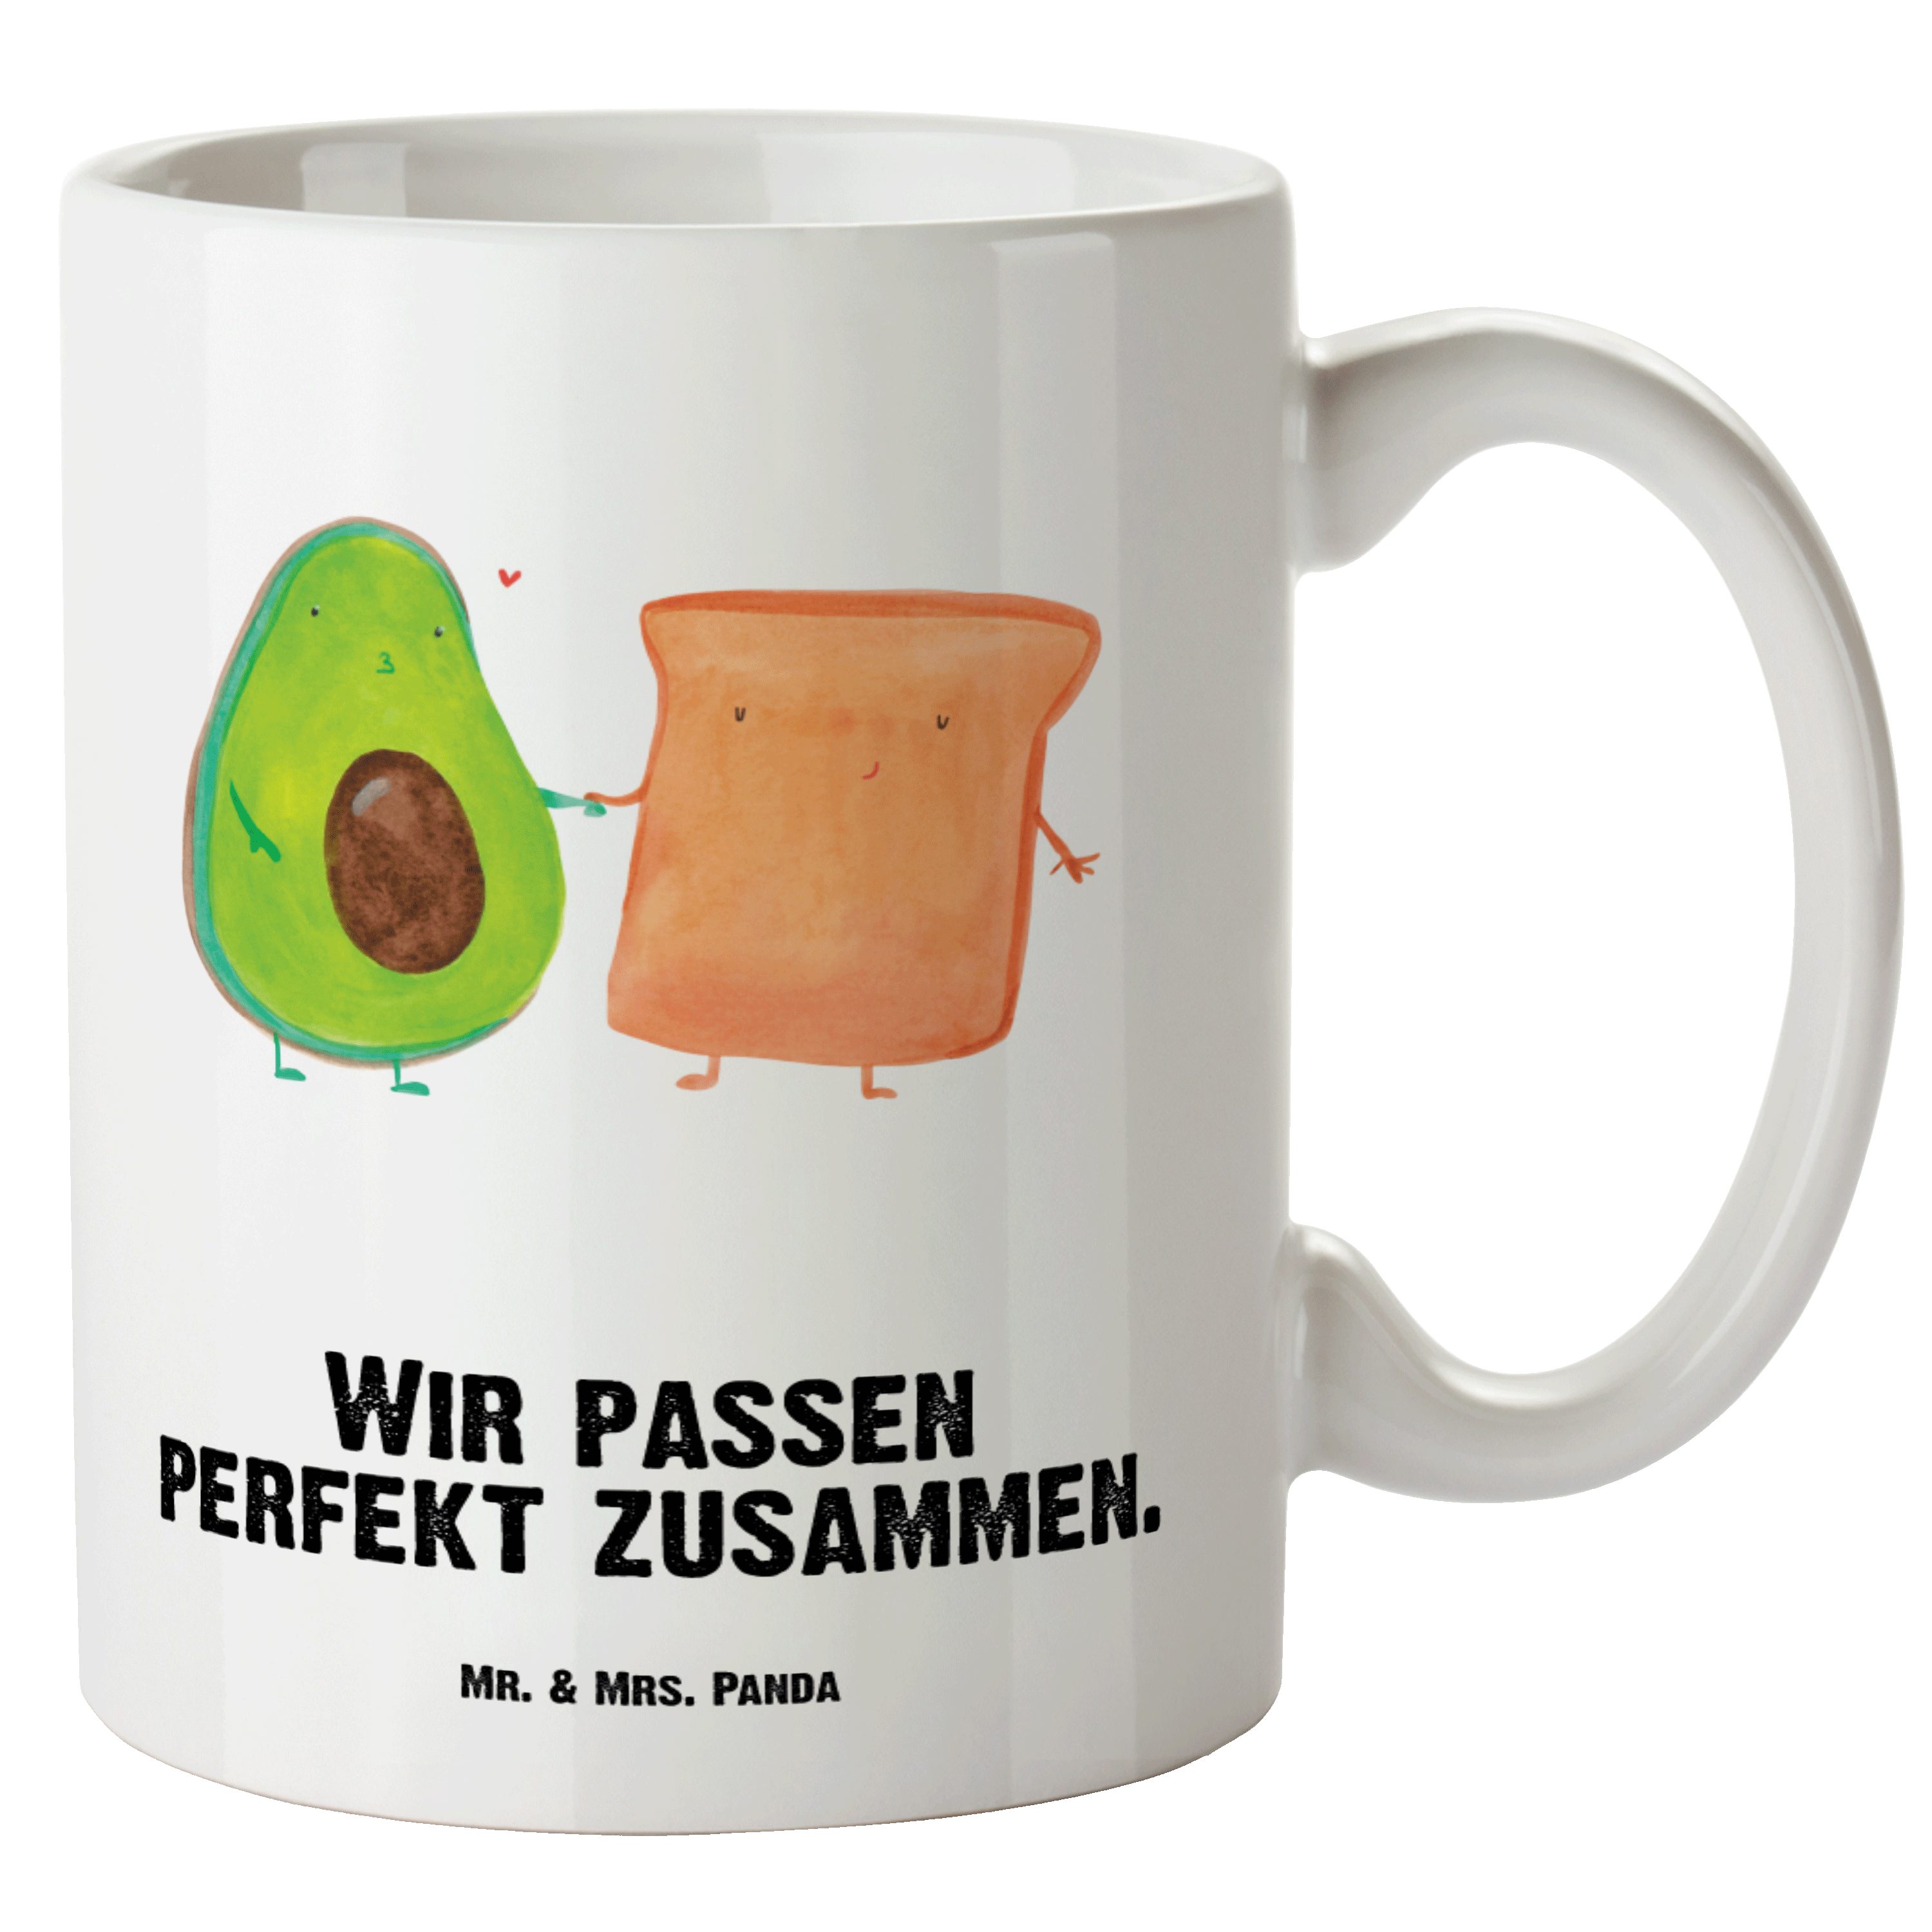 Mr. & Mrs. Panda Tasse Avocado Toast - Weiß - Geschenk, Freund, XL Becher, Gesund, XL Tasse, XL Tasse Keramik, Prächtiger Farbdruck